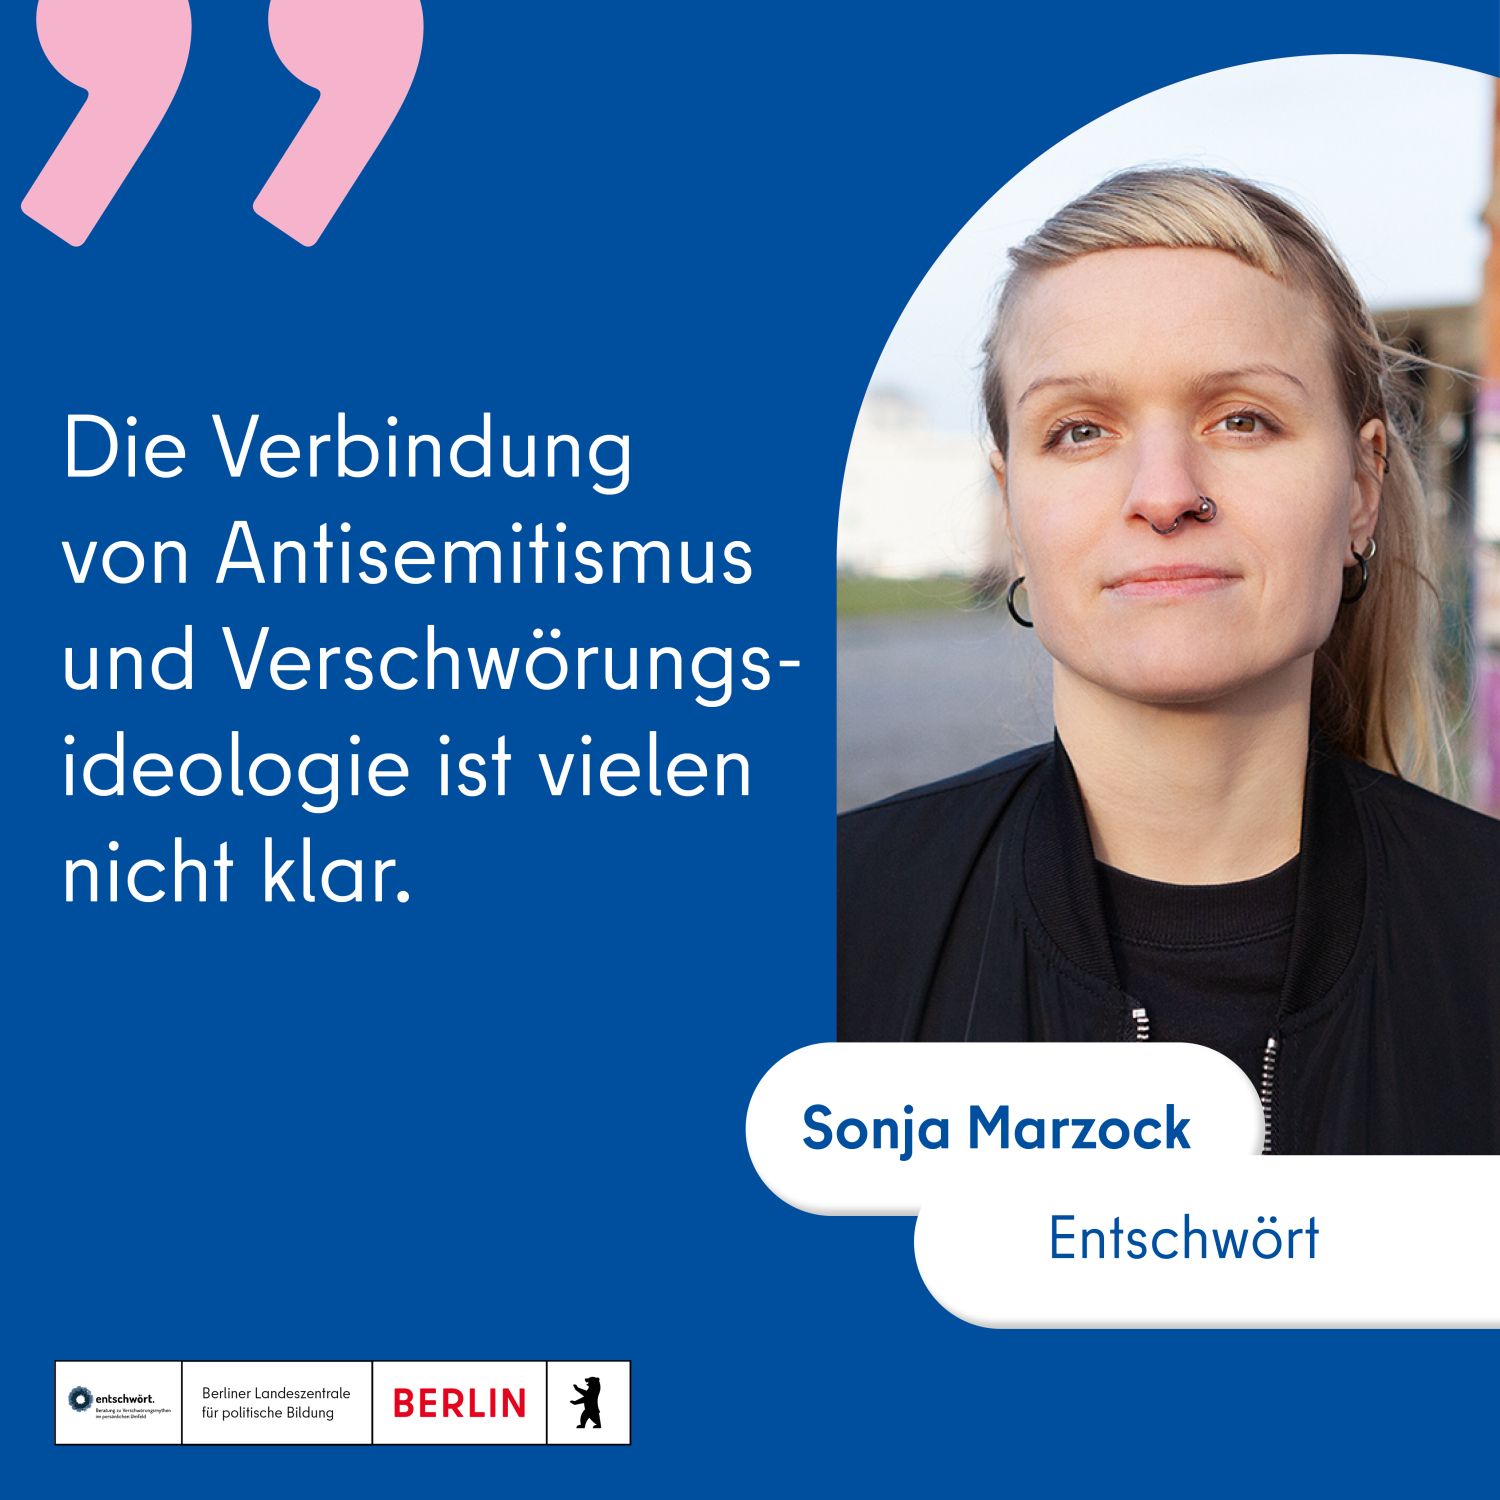 Foto von Sonja Marzock von Entschwört mit Zitat: "Die Verbindung von Antisemitismus und Verschwörungsideologie ist vielen nicht klar."